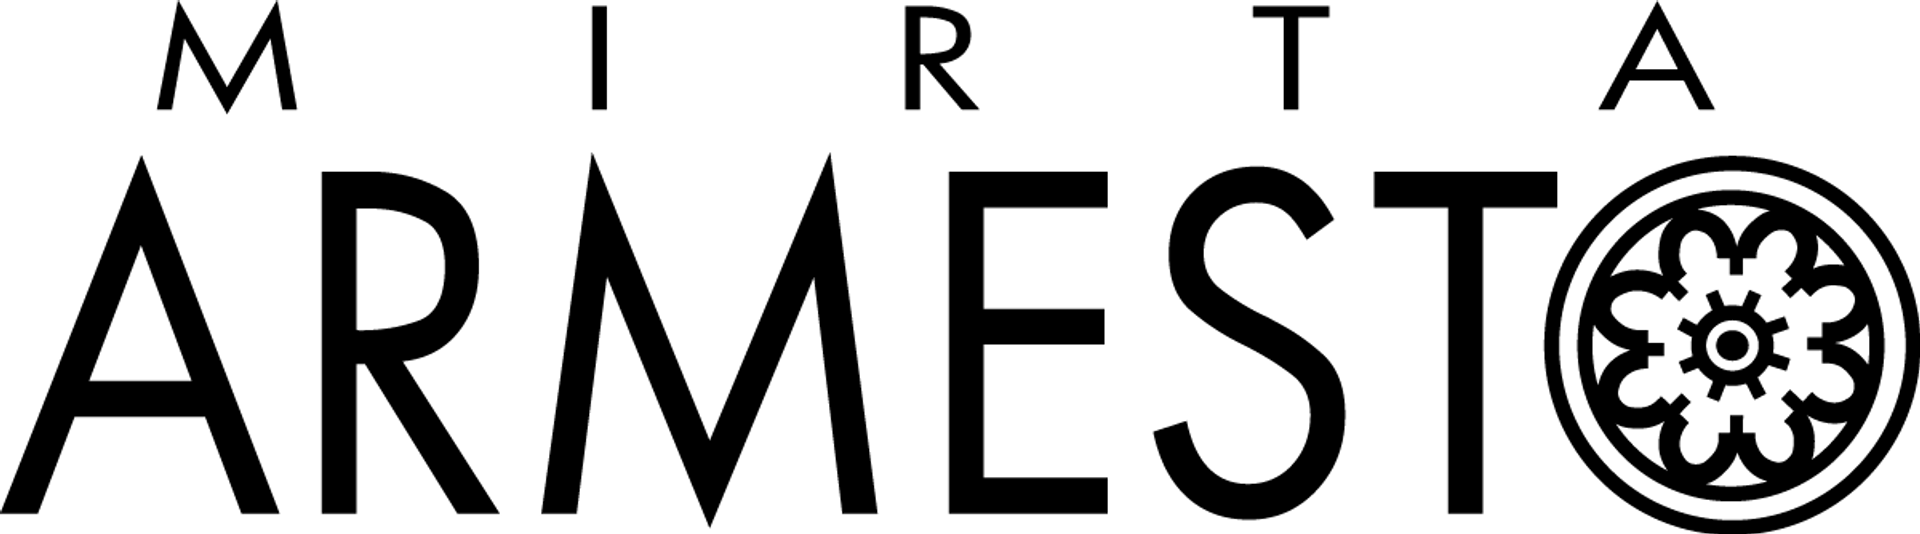 MIRTA ARMESTO logo de catálogo